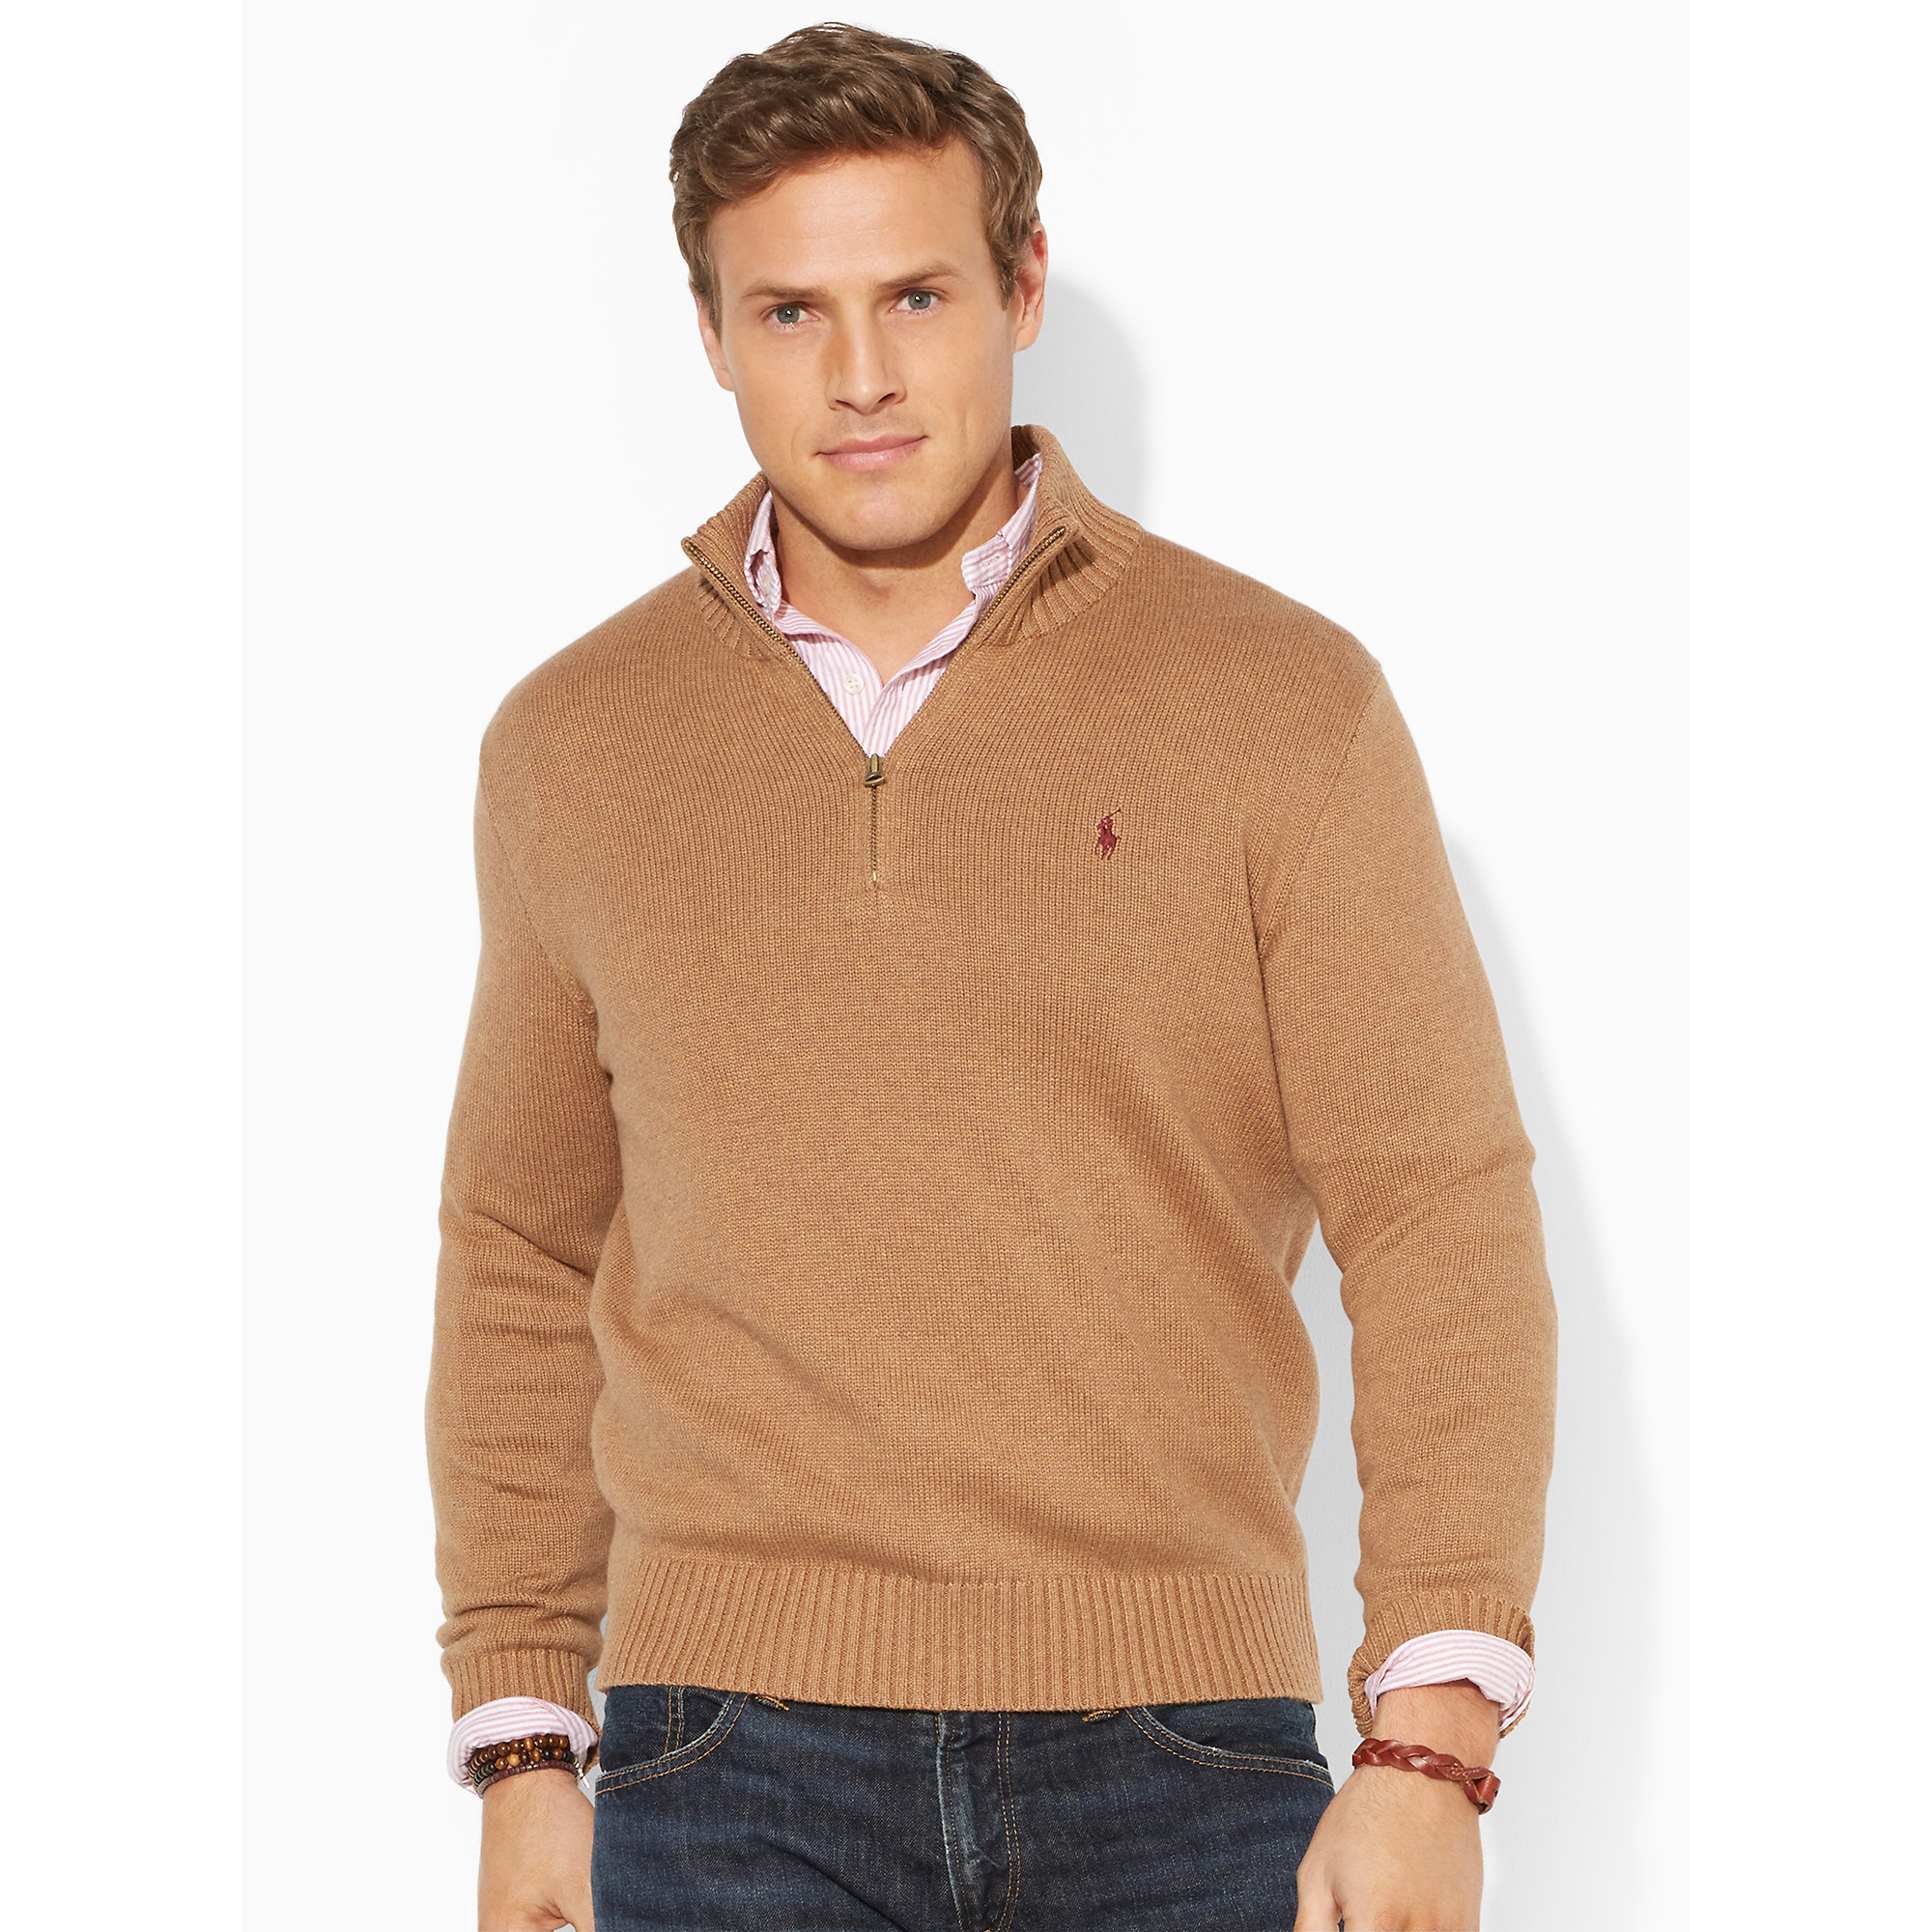 Lyst - Polo Ralph Lauren Cotton Half-Zip Sweater in Brown for Men